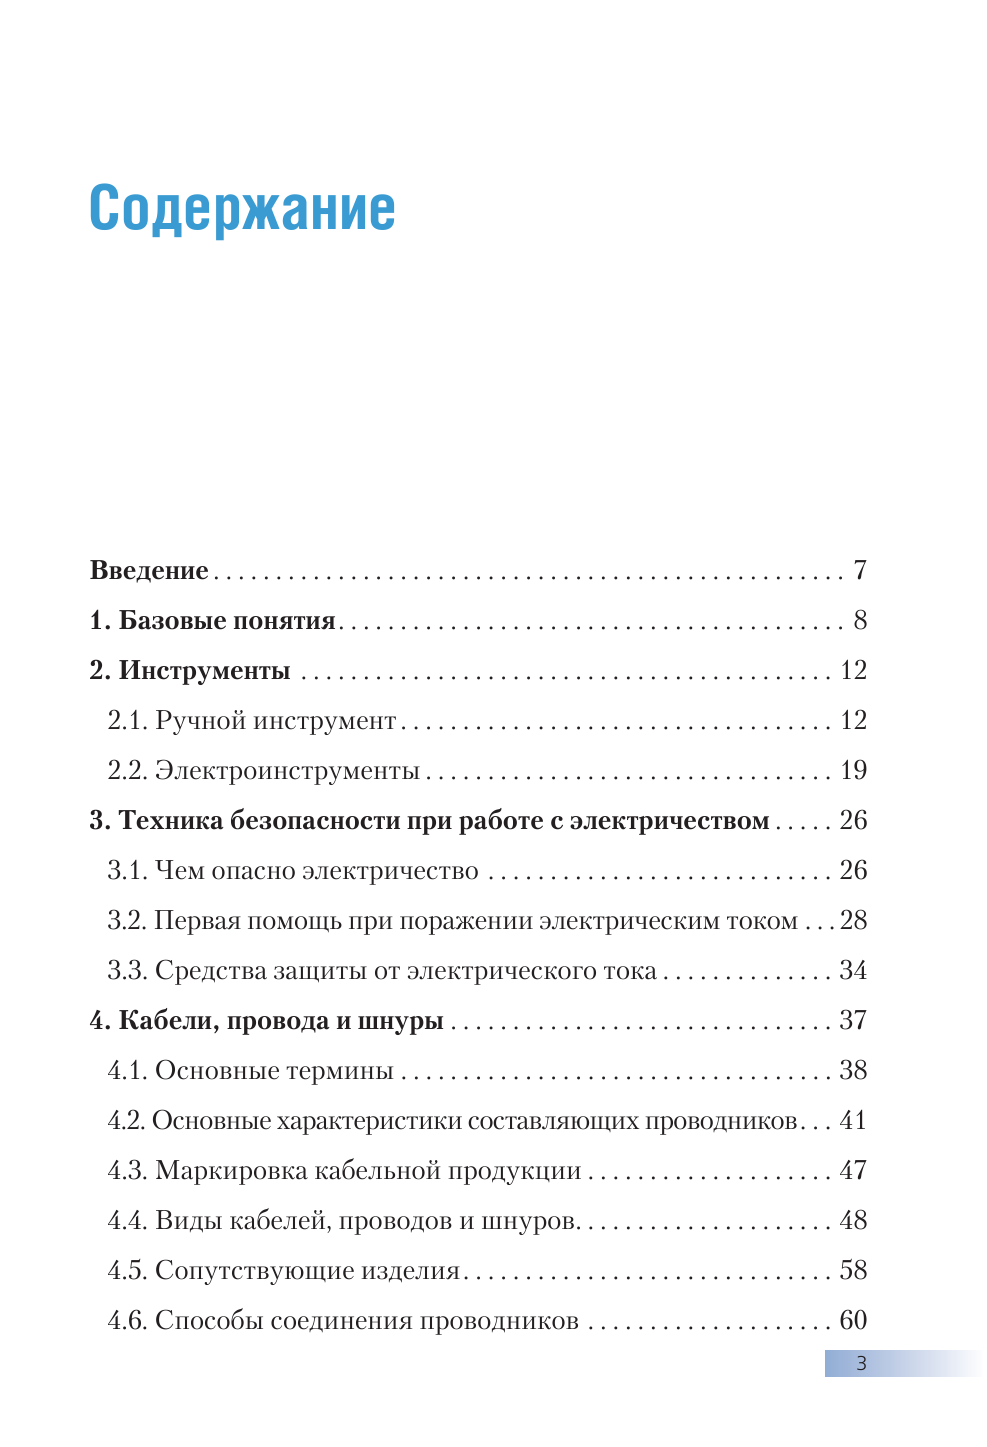 Большая энциклопедия электрика - фото №3